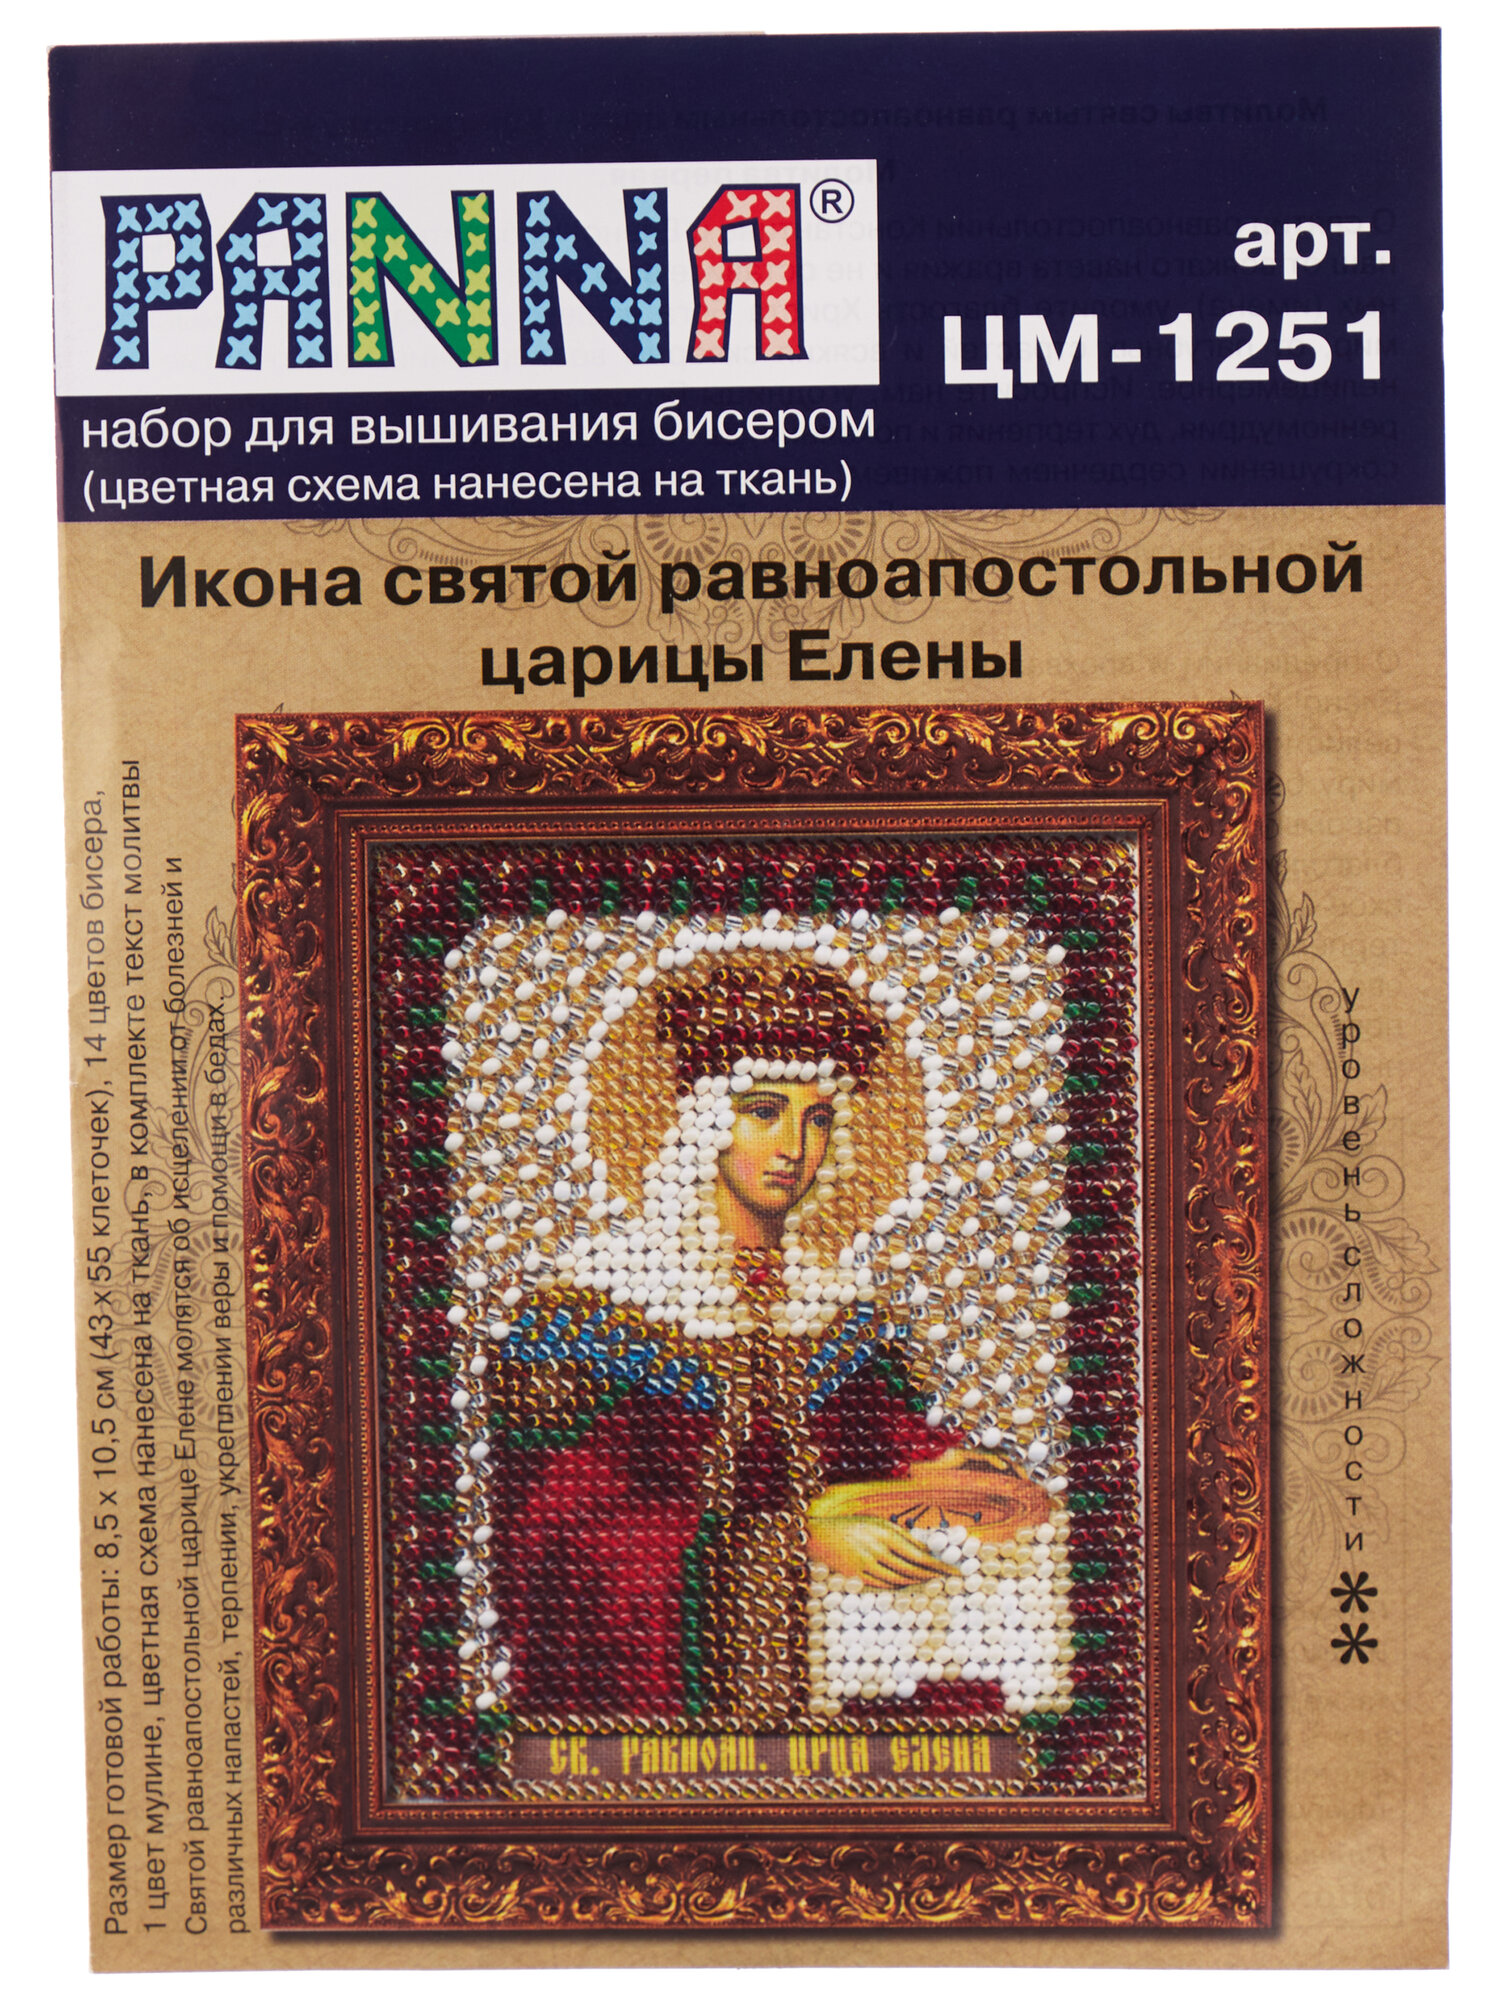 ЦМ-1251 "Икона святой равноапостольной царицы Елены" PANNA - фото №3